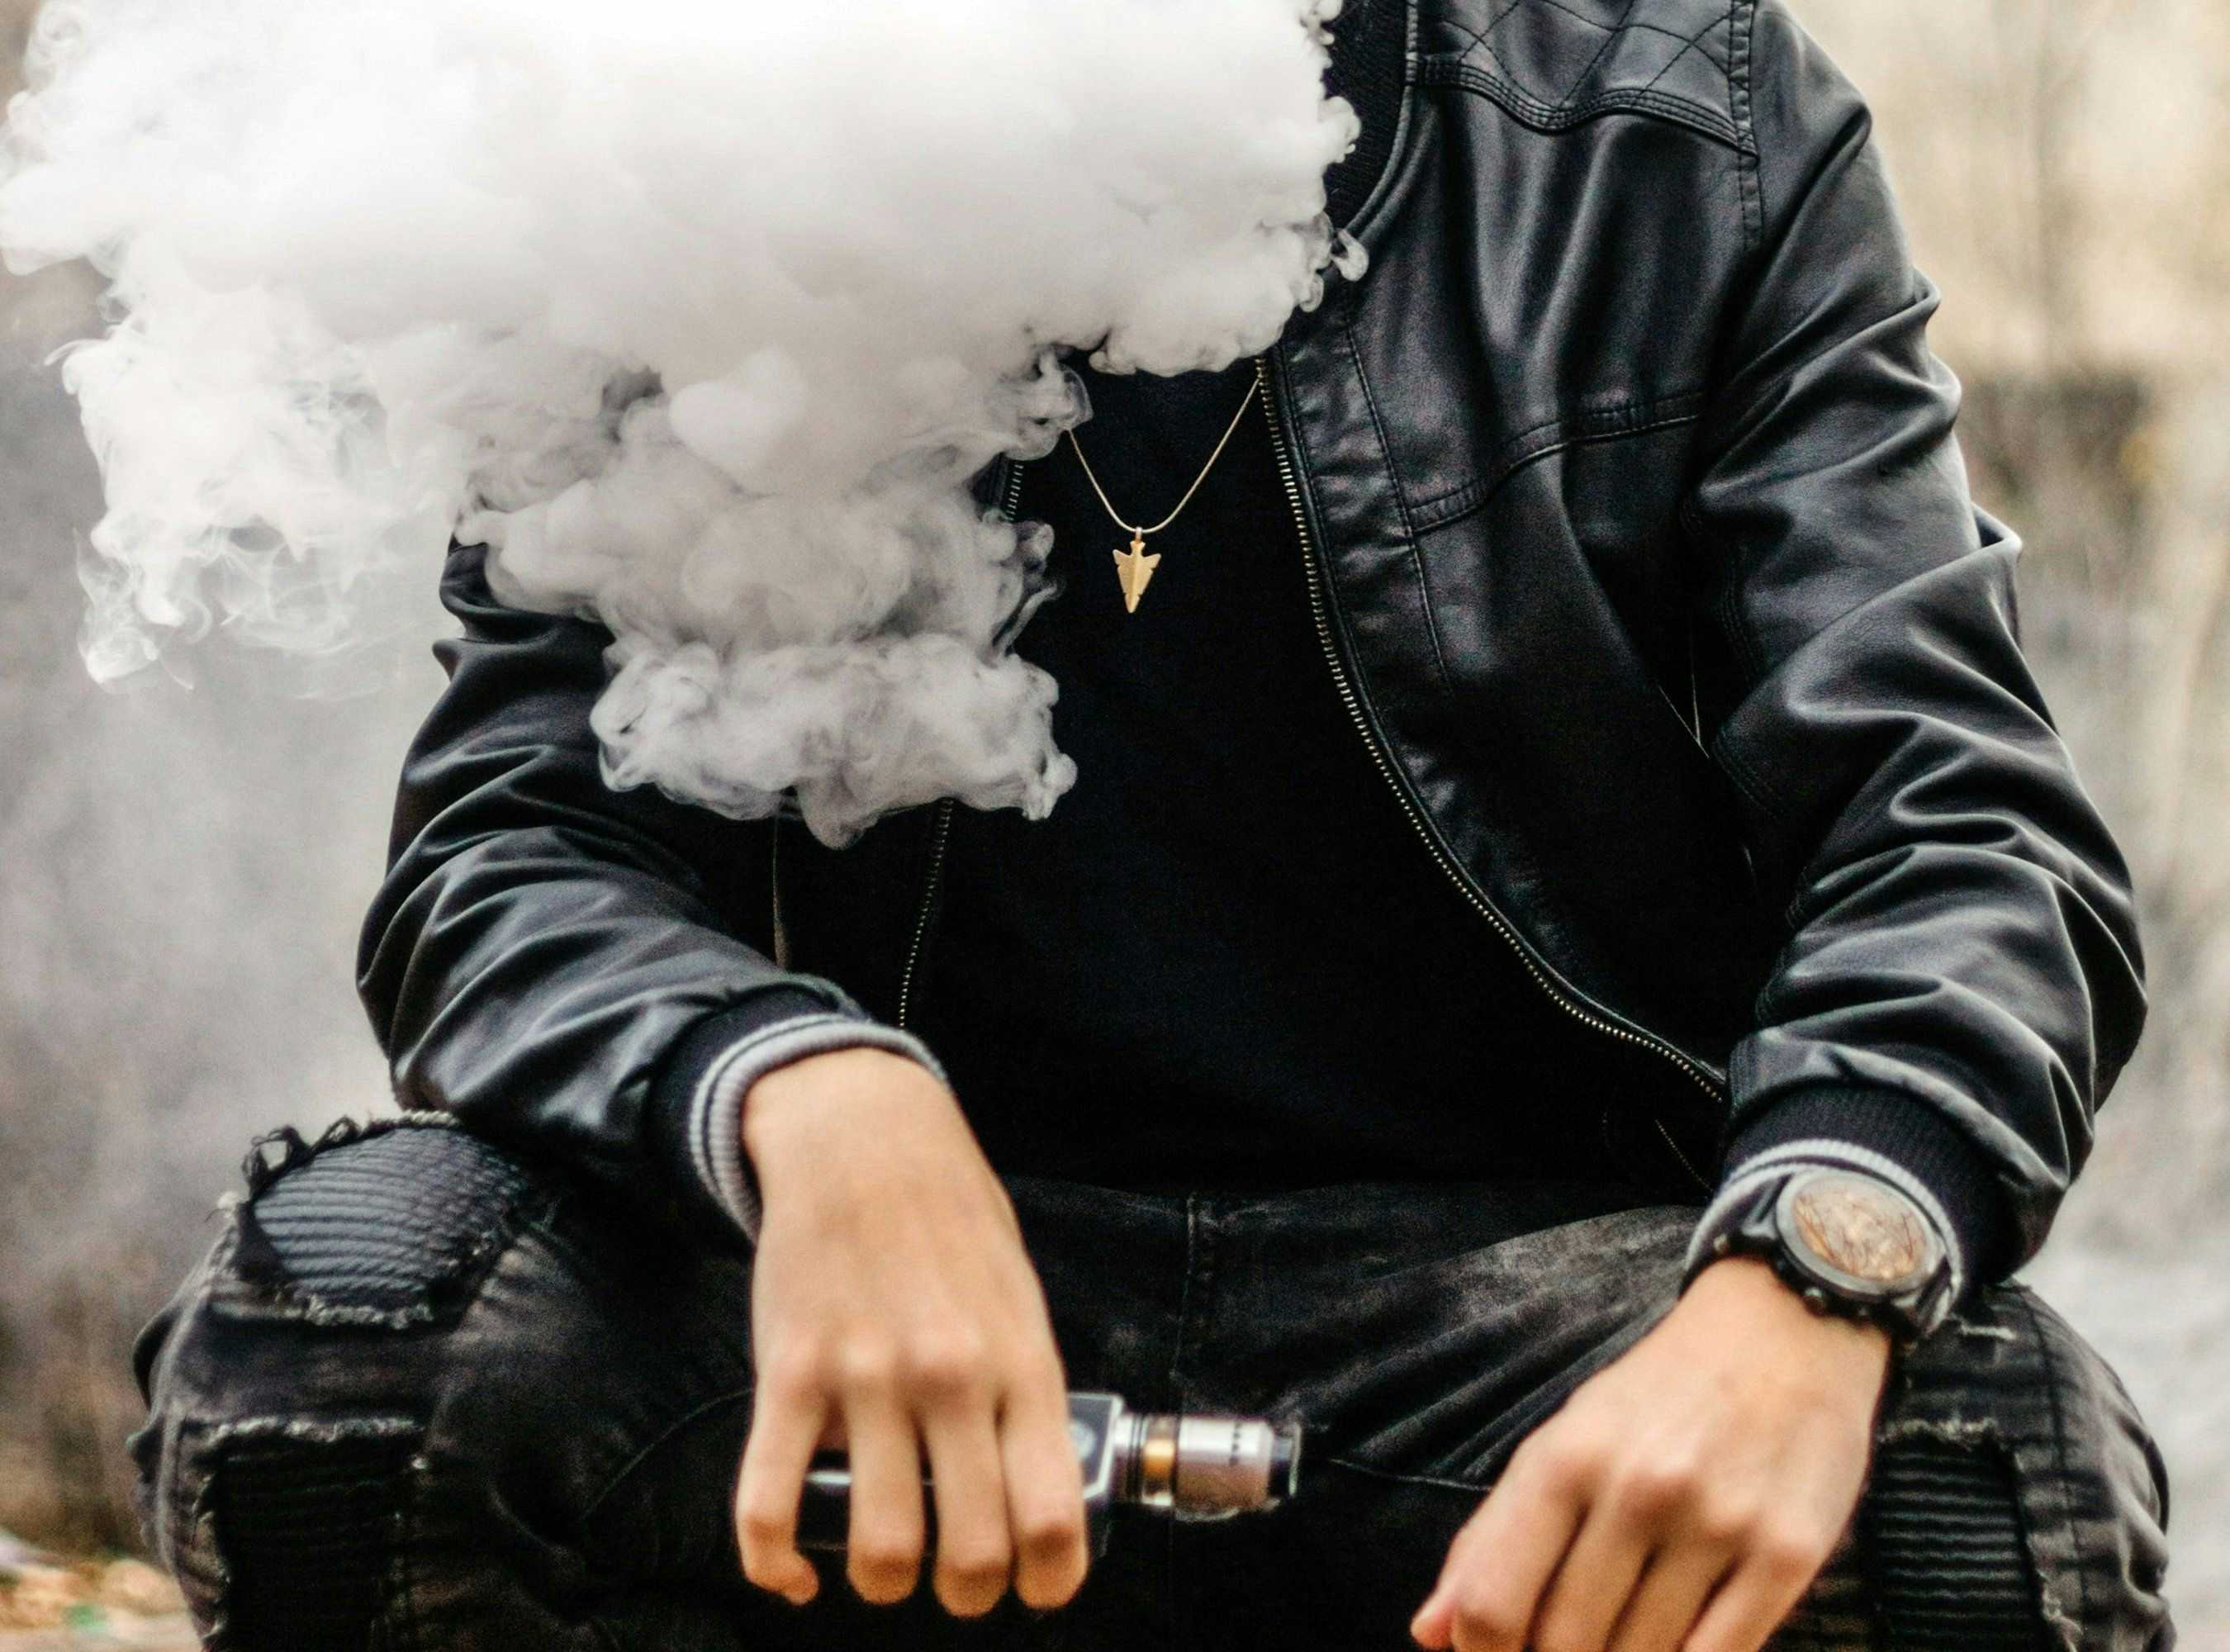 JUUL’s E-Cigarettes Face Litigation Over Safety Concerns